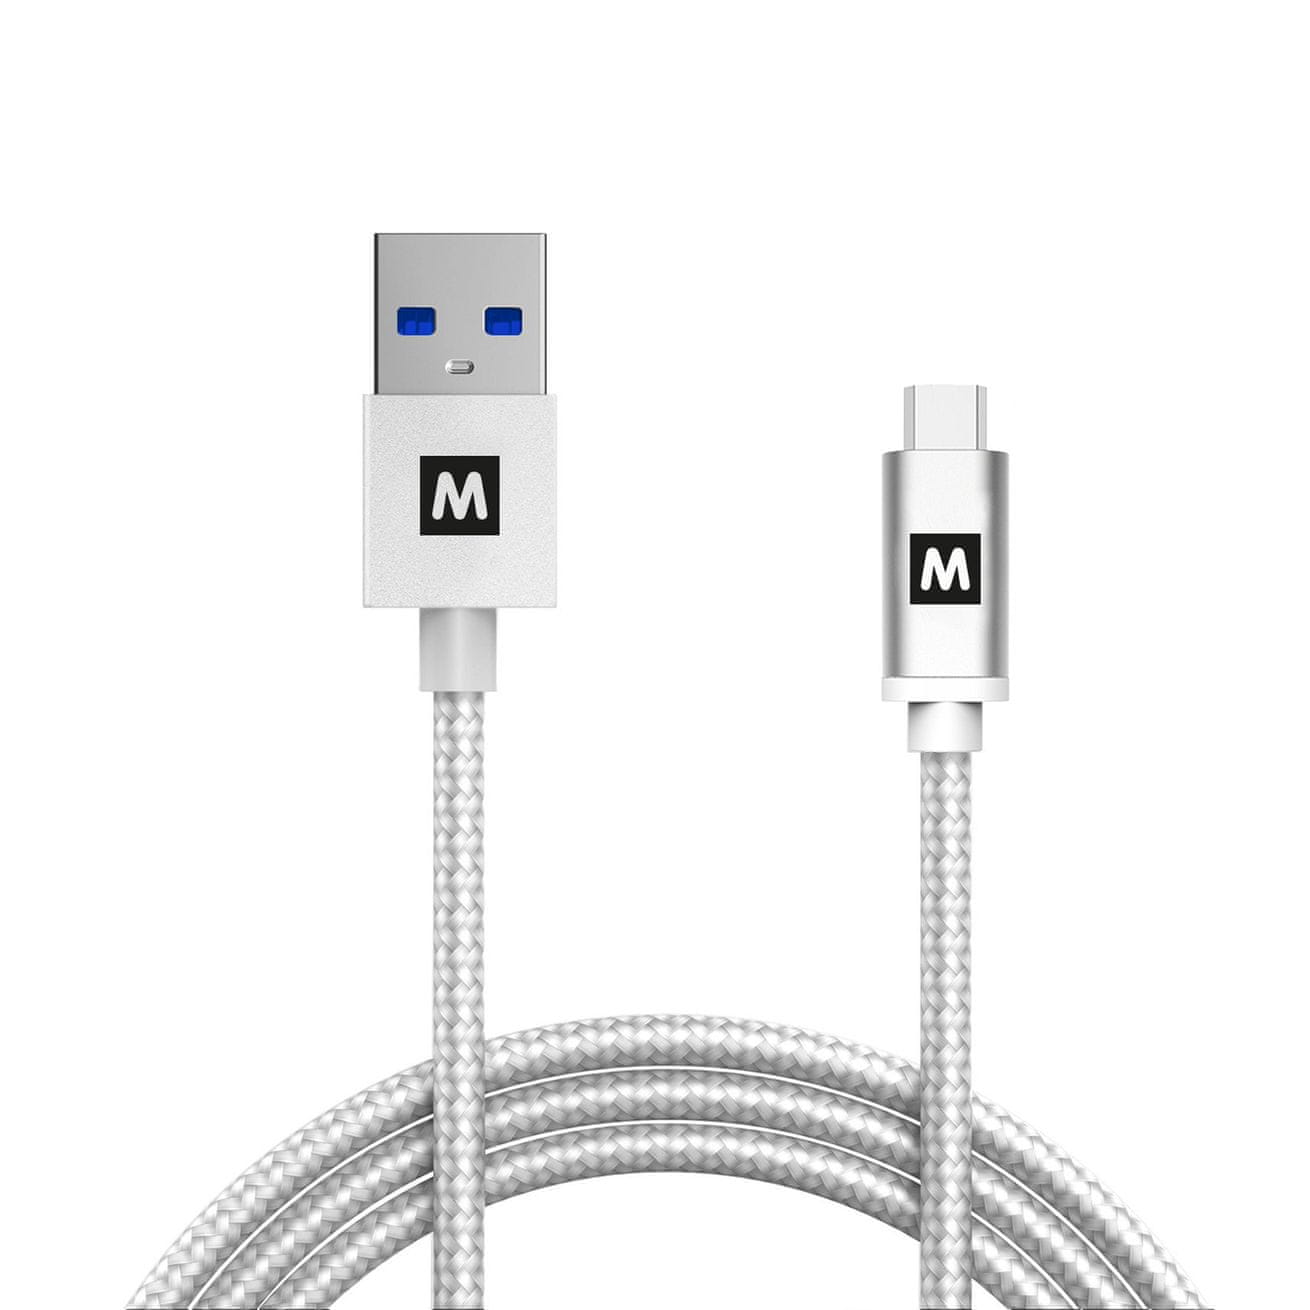  MAX kabel MUC4100W USB 3.1 Gen2 1m opletený 